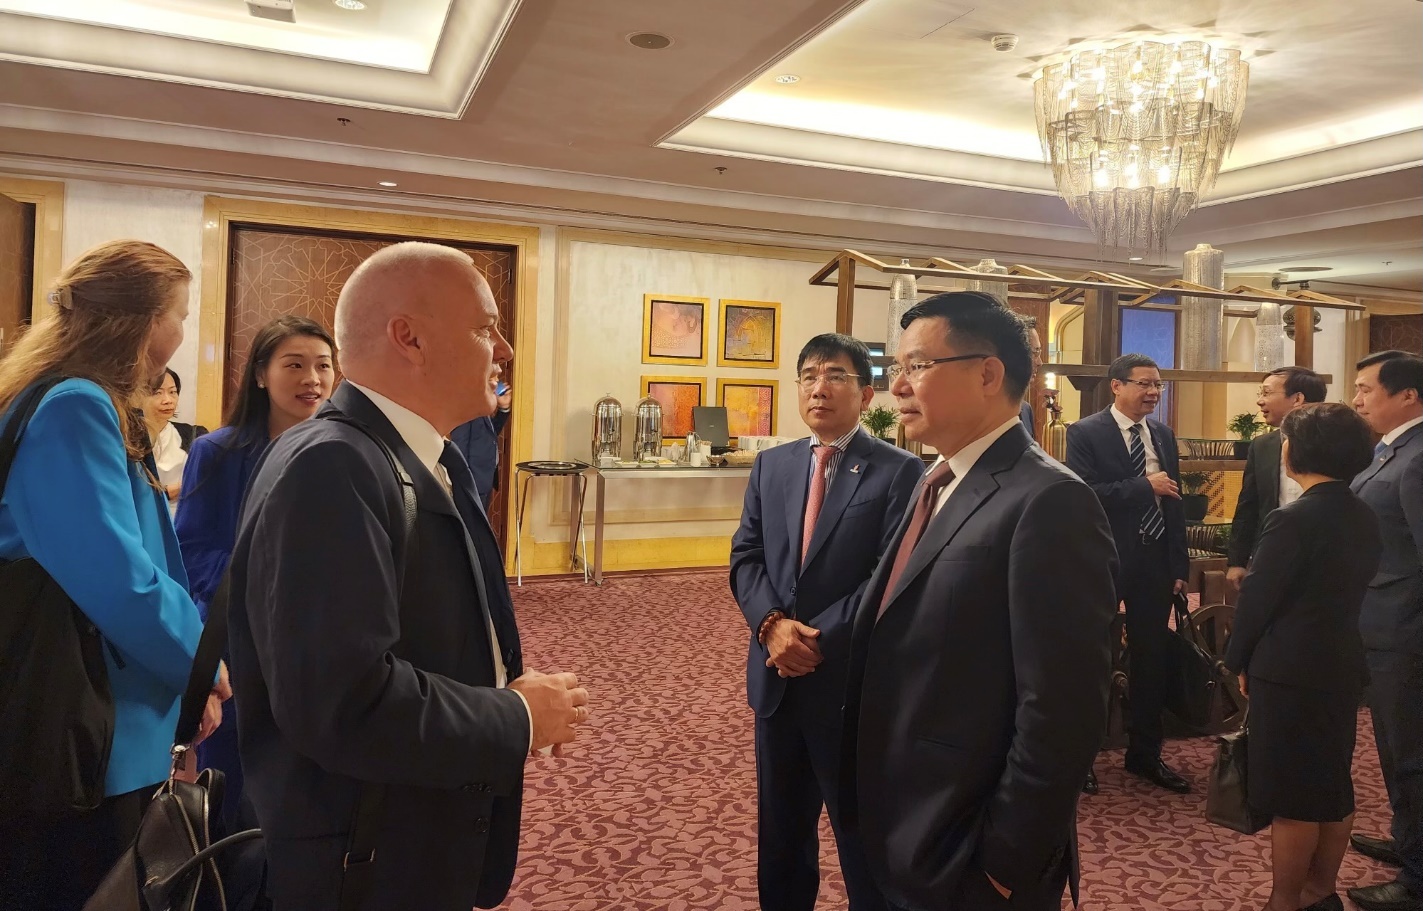 Lãnh đạo Tập đoàn Dầu khí Việt Nam tham dự Hội nghị COP28 và làm việc với các đối tác